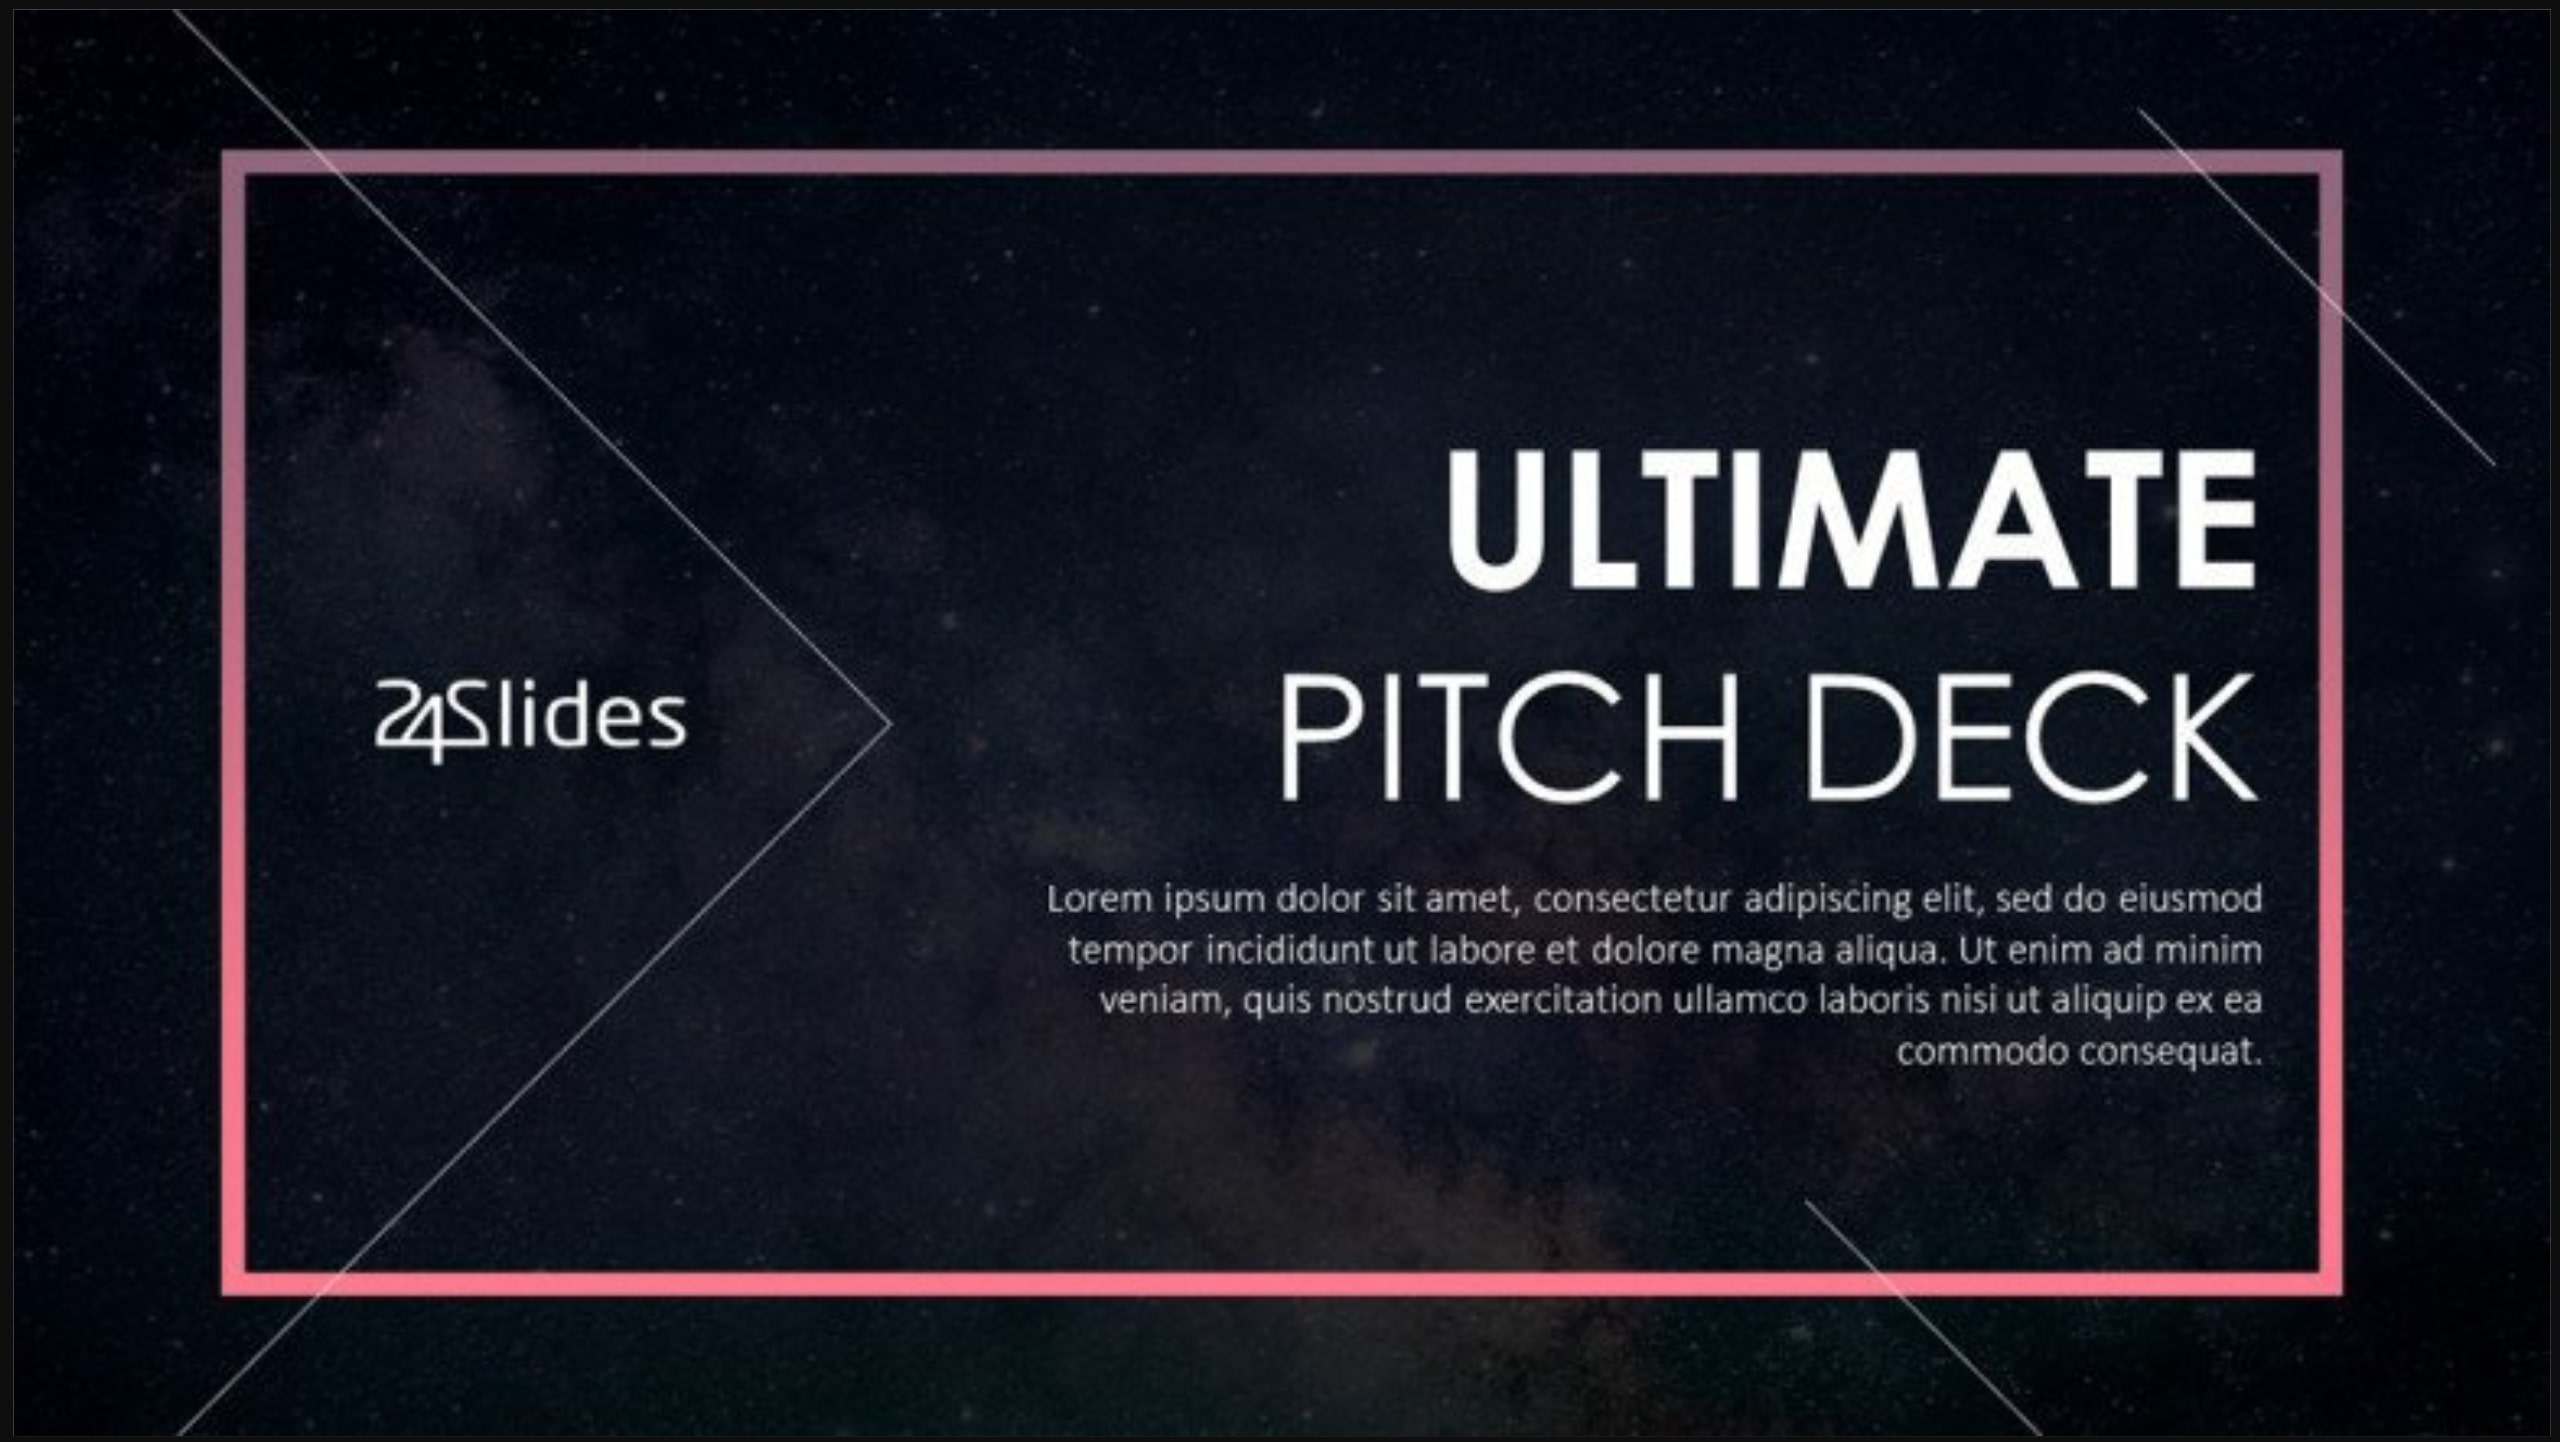 Google-slides-pitch-deck-template-19 20+ Pitch Deck Presentation Templates for Google Slides design tips  